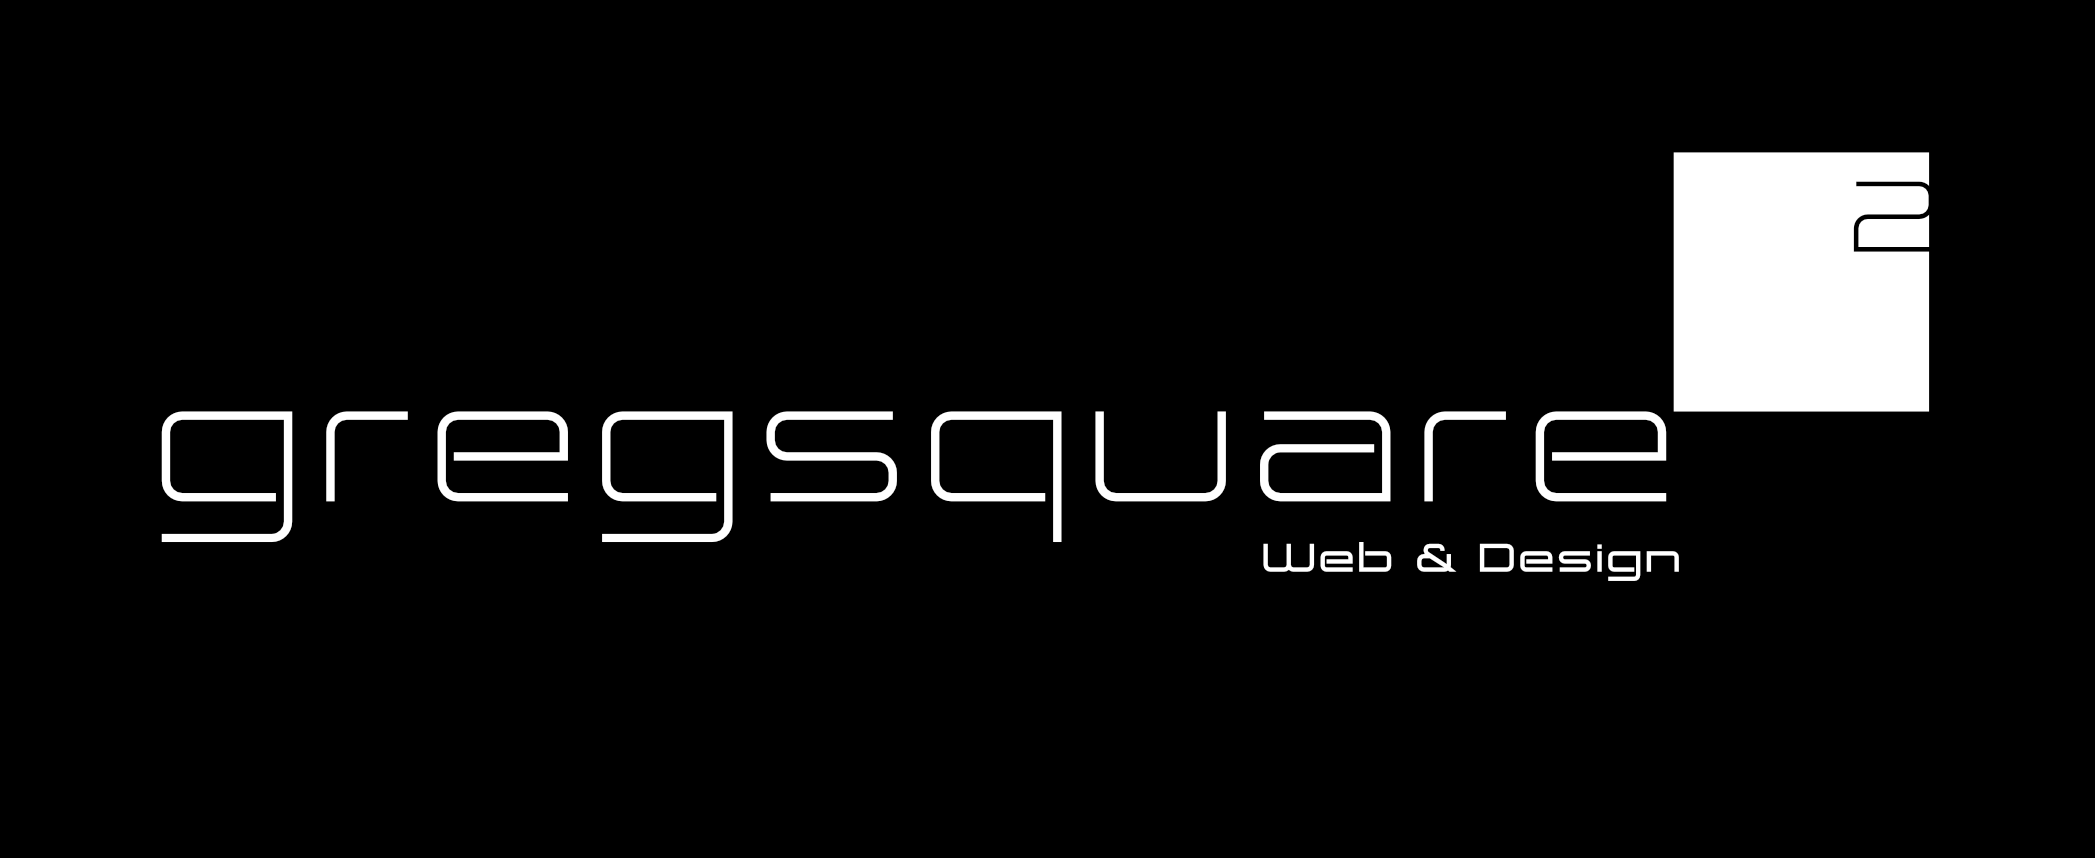 gregsquare2_logo